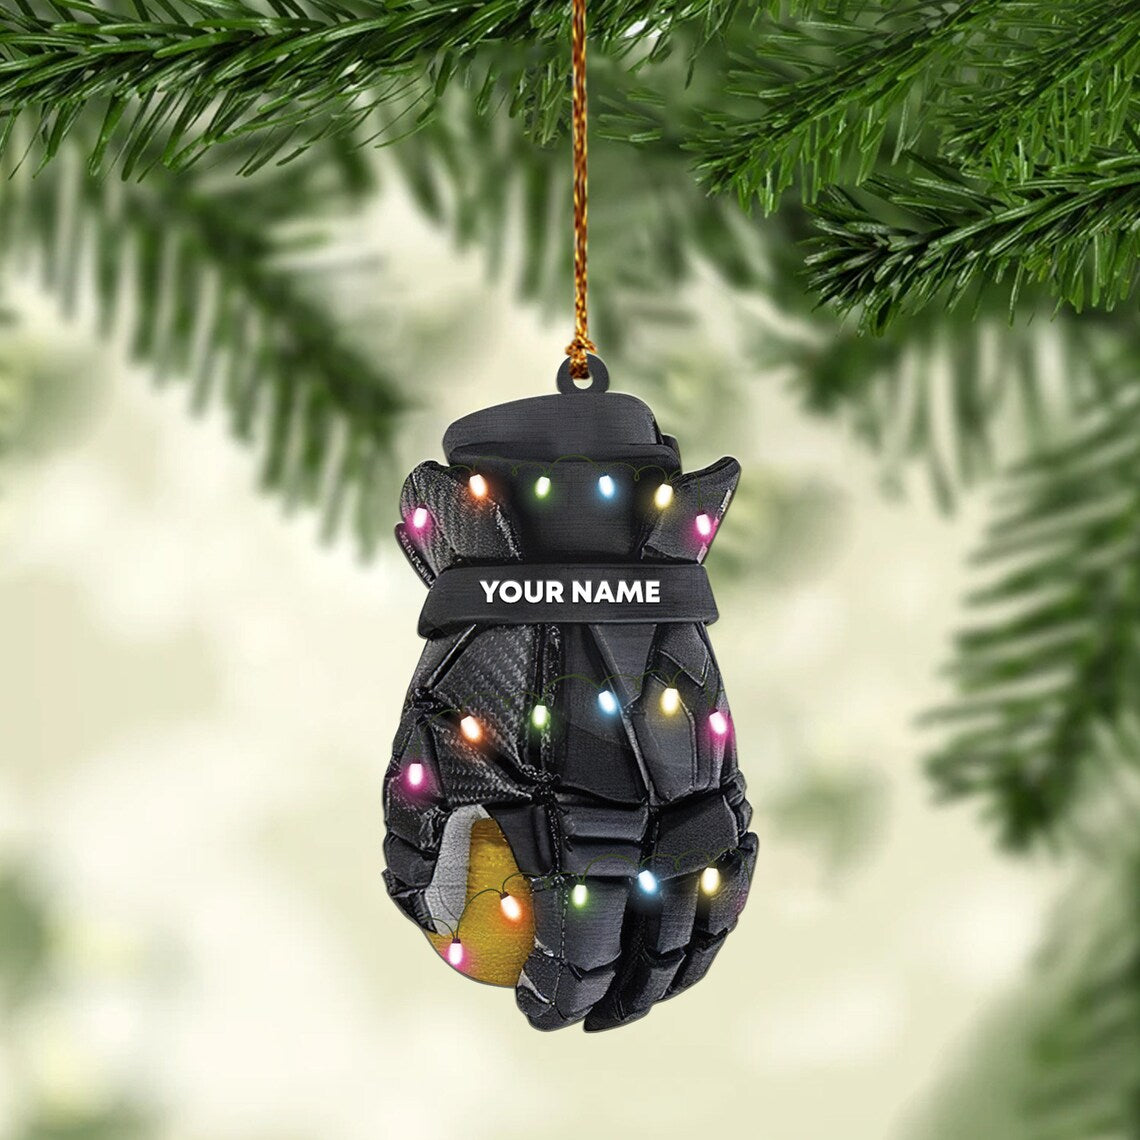 Personalized Baseball gloves Christmas Ornament/ Gift For Baseball lover/ Love Baseball tree hanging Ornament Decor/ Baseball decor